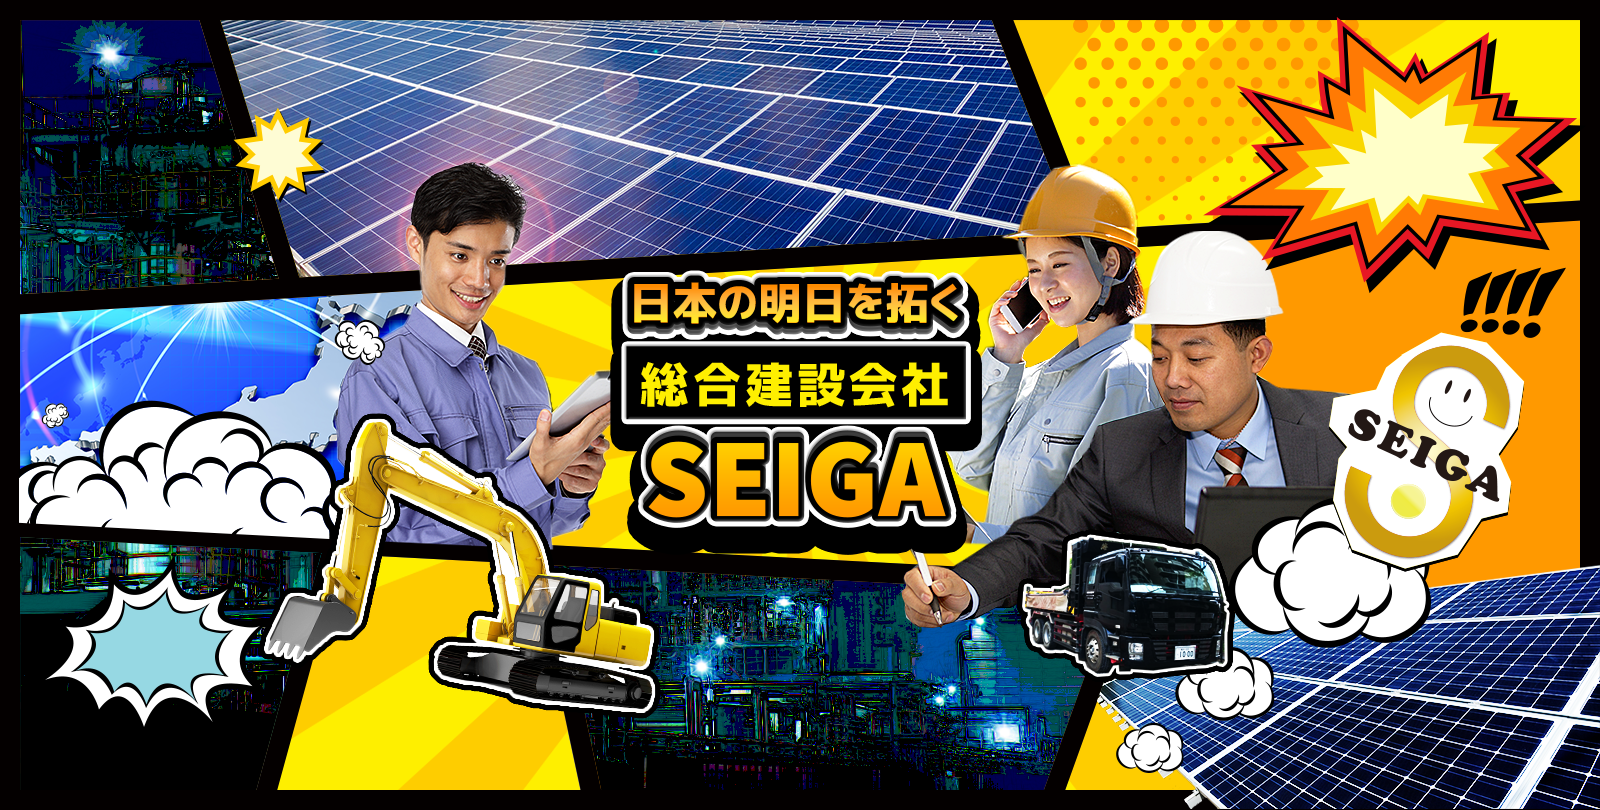 株式会社SEIGAのホームページを開設しました。